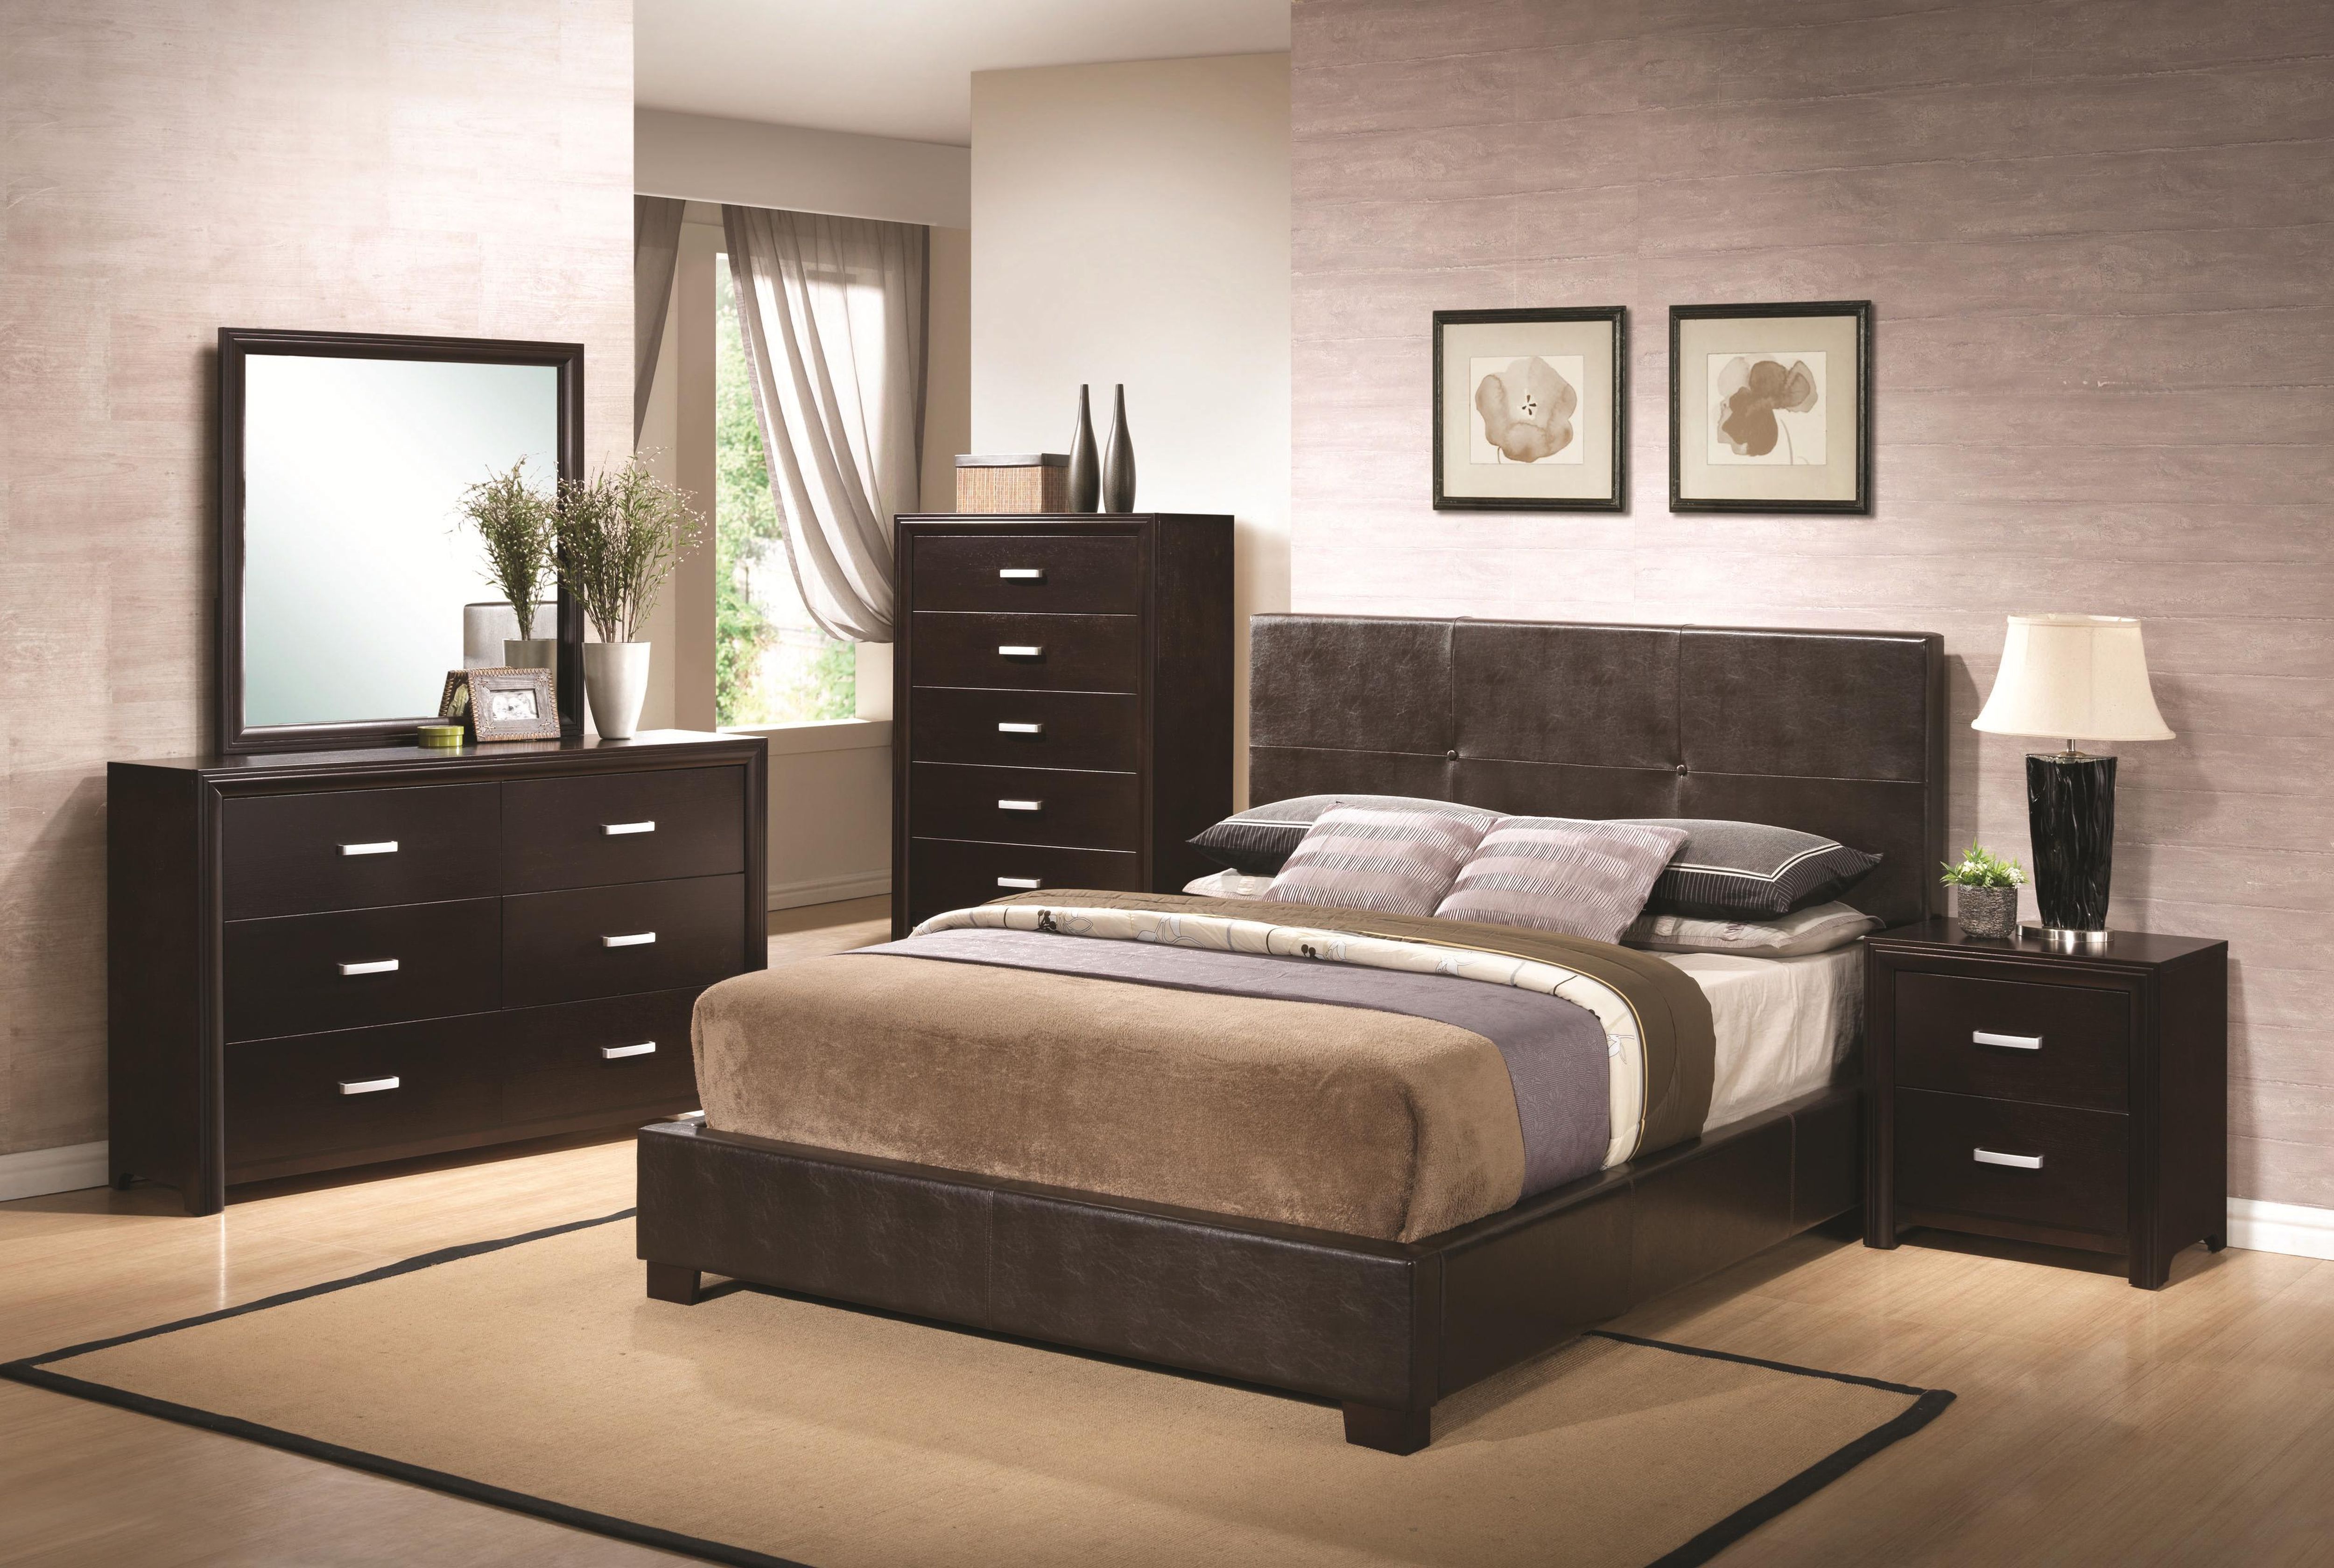 ikea light wood bedroom furniture